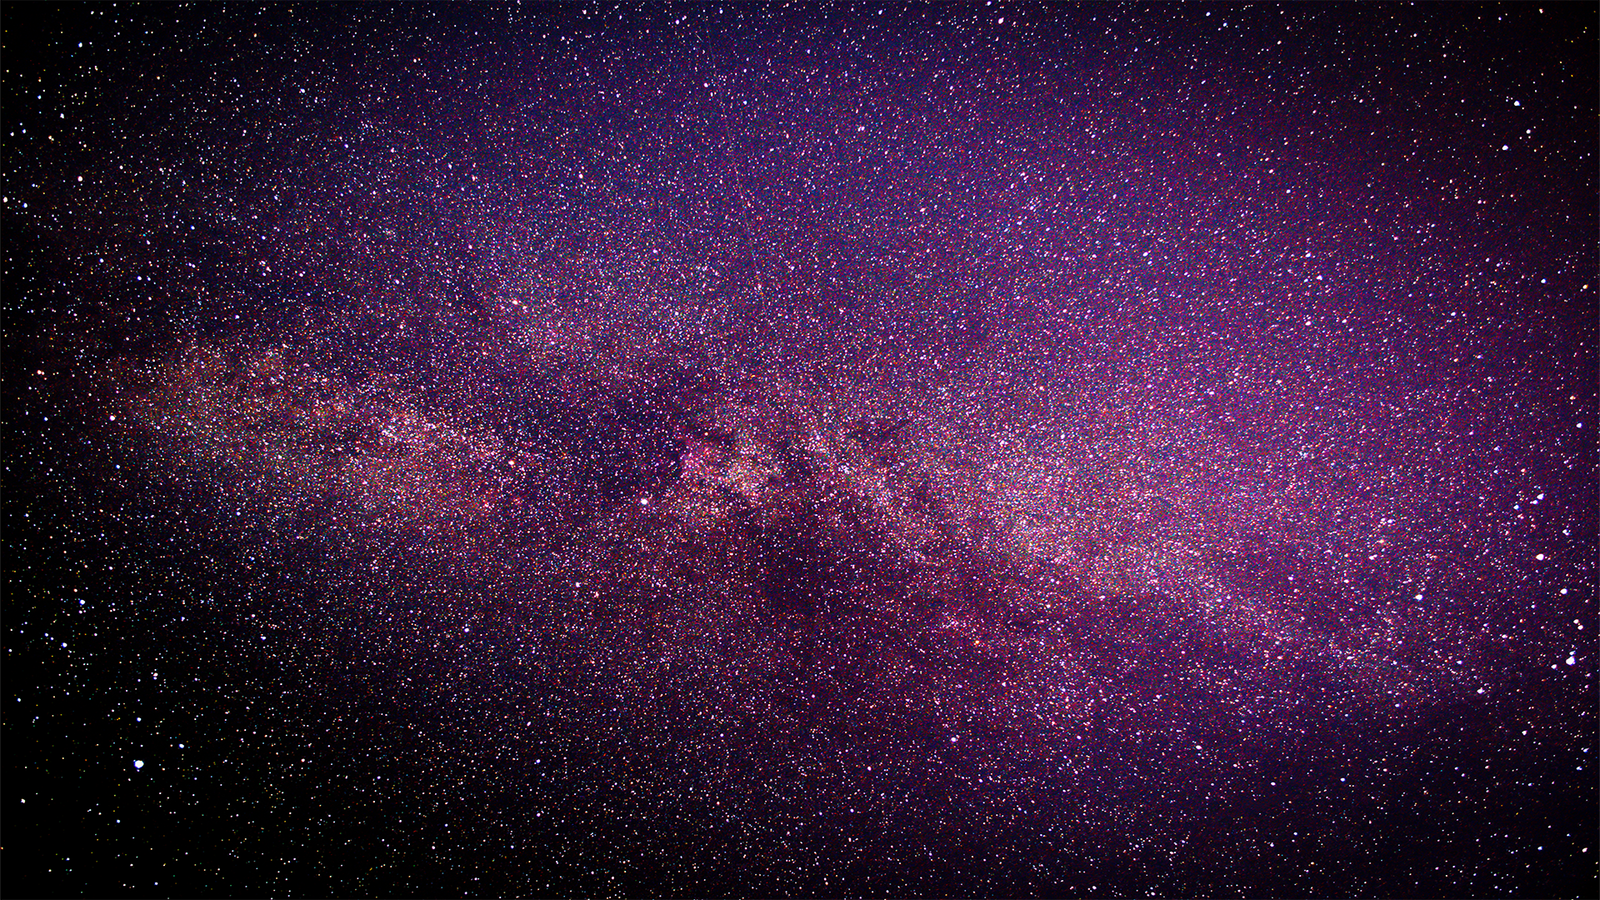 Звёздное небо и космос в картинках - Страница 40 1500411264198166829